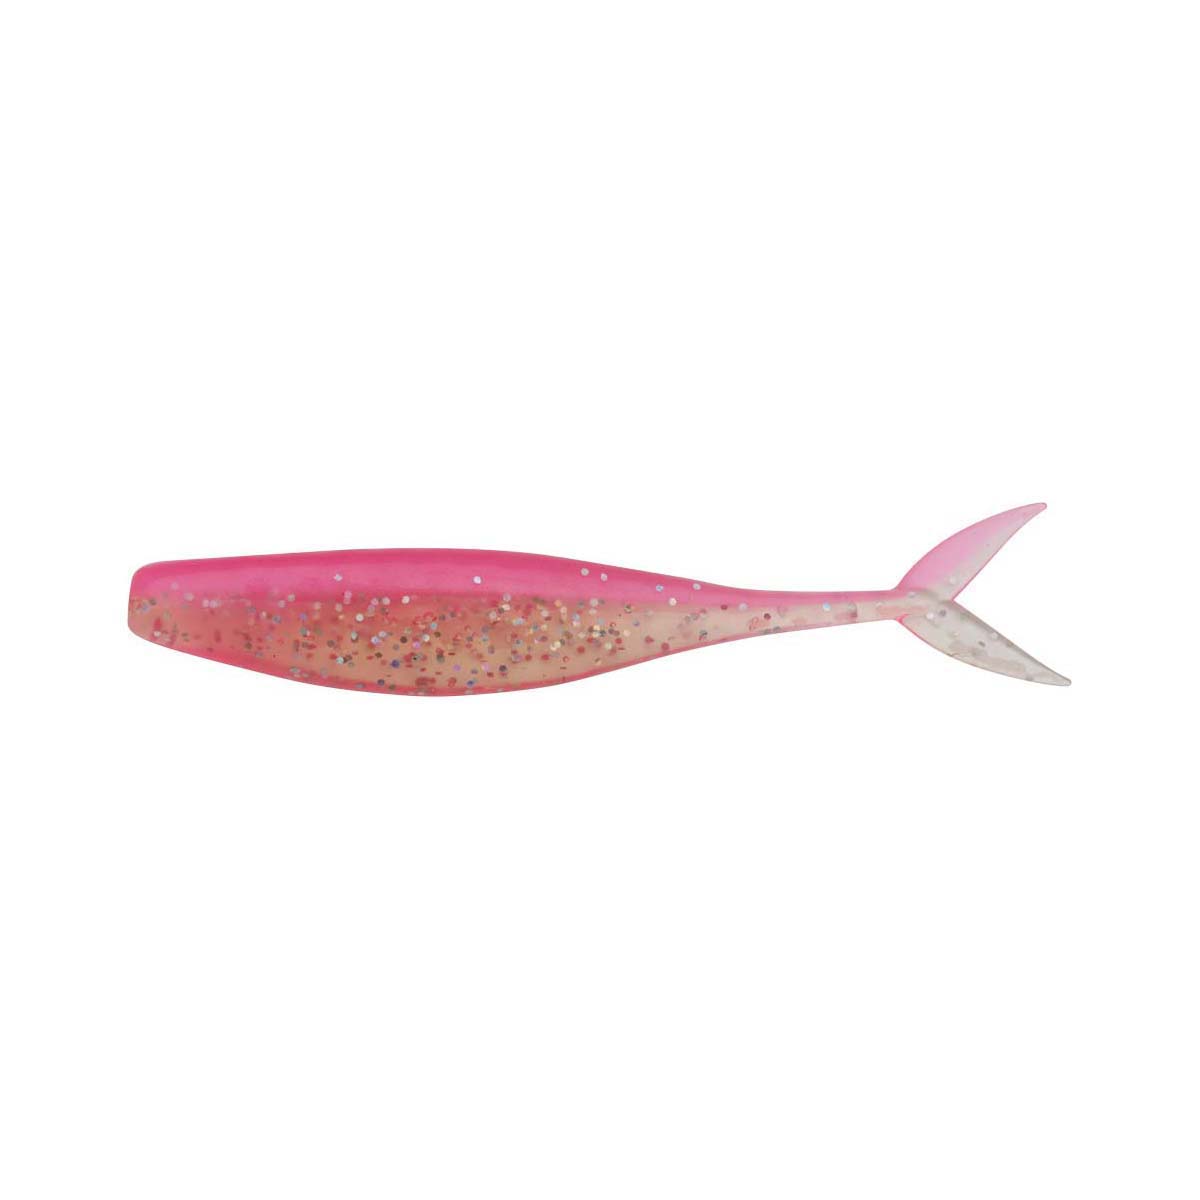 Berkley Powerbait Forktail Minnow Soft Plastic Lure 3.5in Pink Glitter